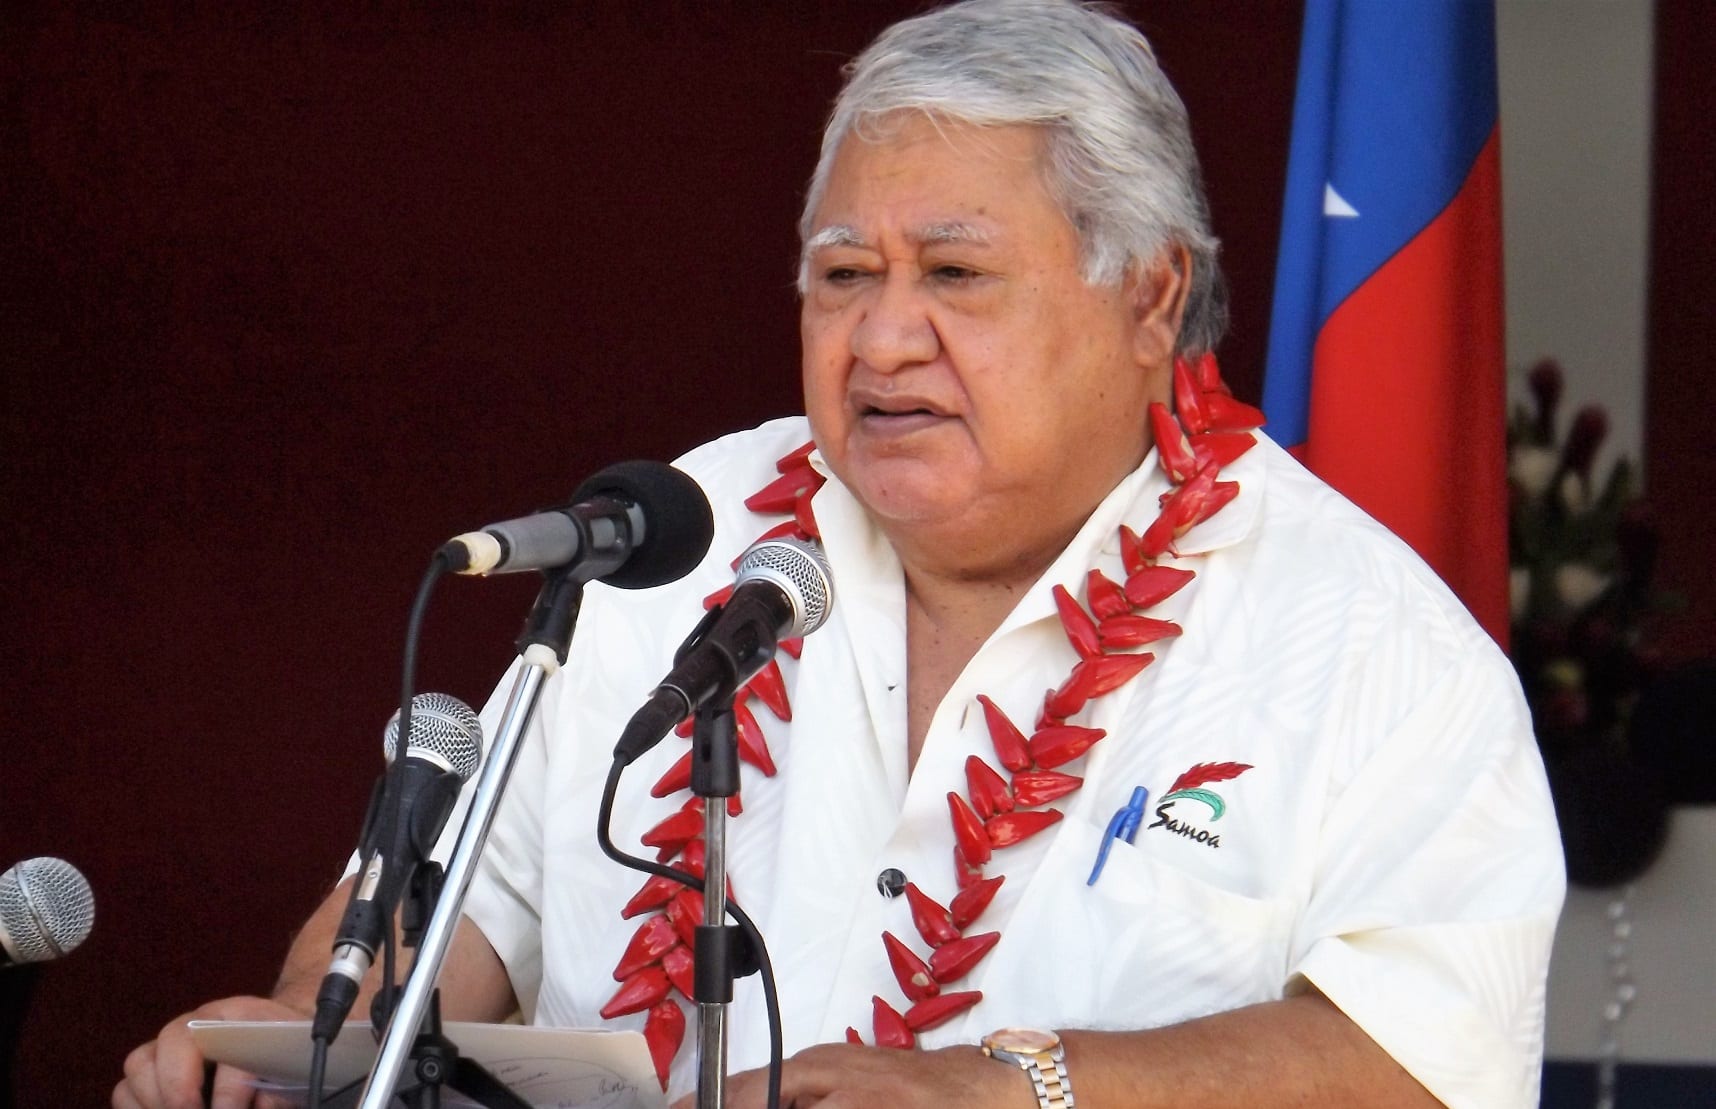 Samoa's PM Tuilaepa Sailele Malielegaoi